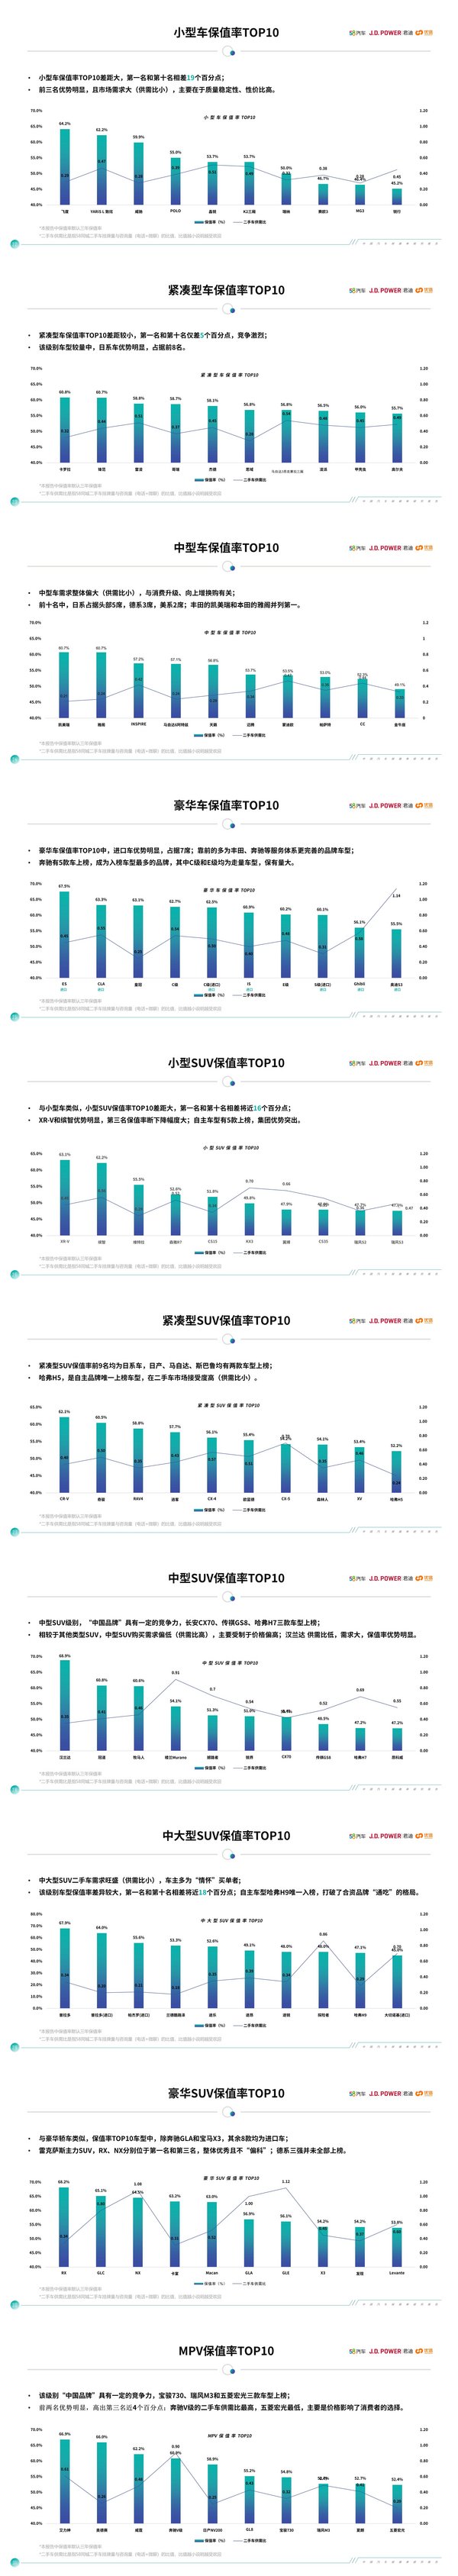 中国汽车保值率研究报告（2020年3月）保值率榜单